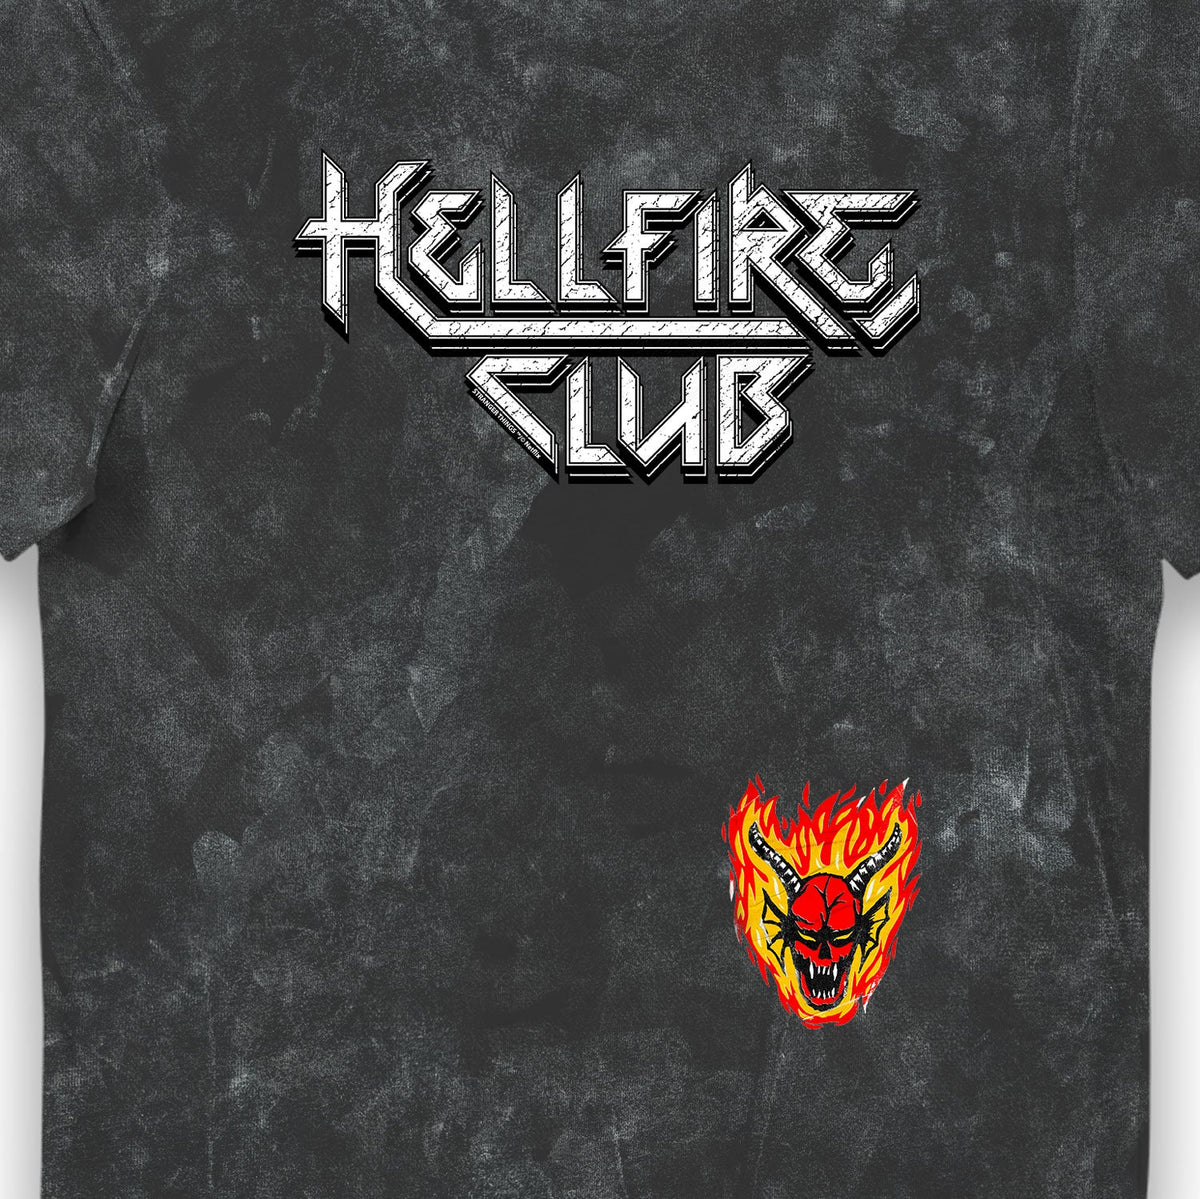 Stranger Things Hellfire Club Snowash Adults T-Shirt